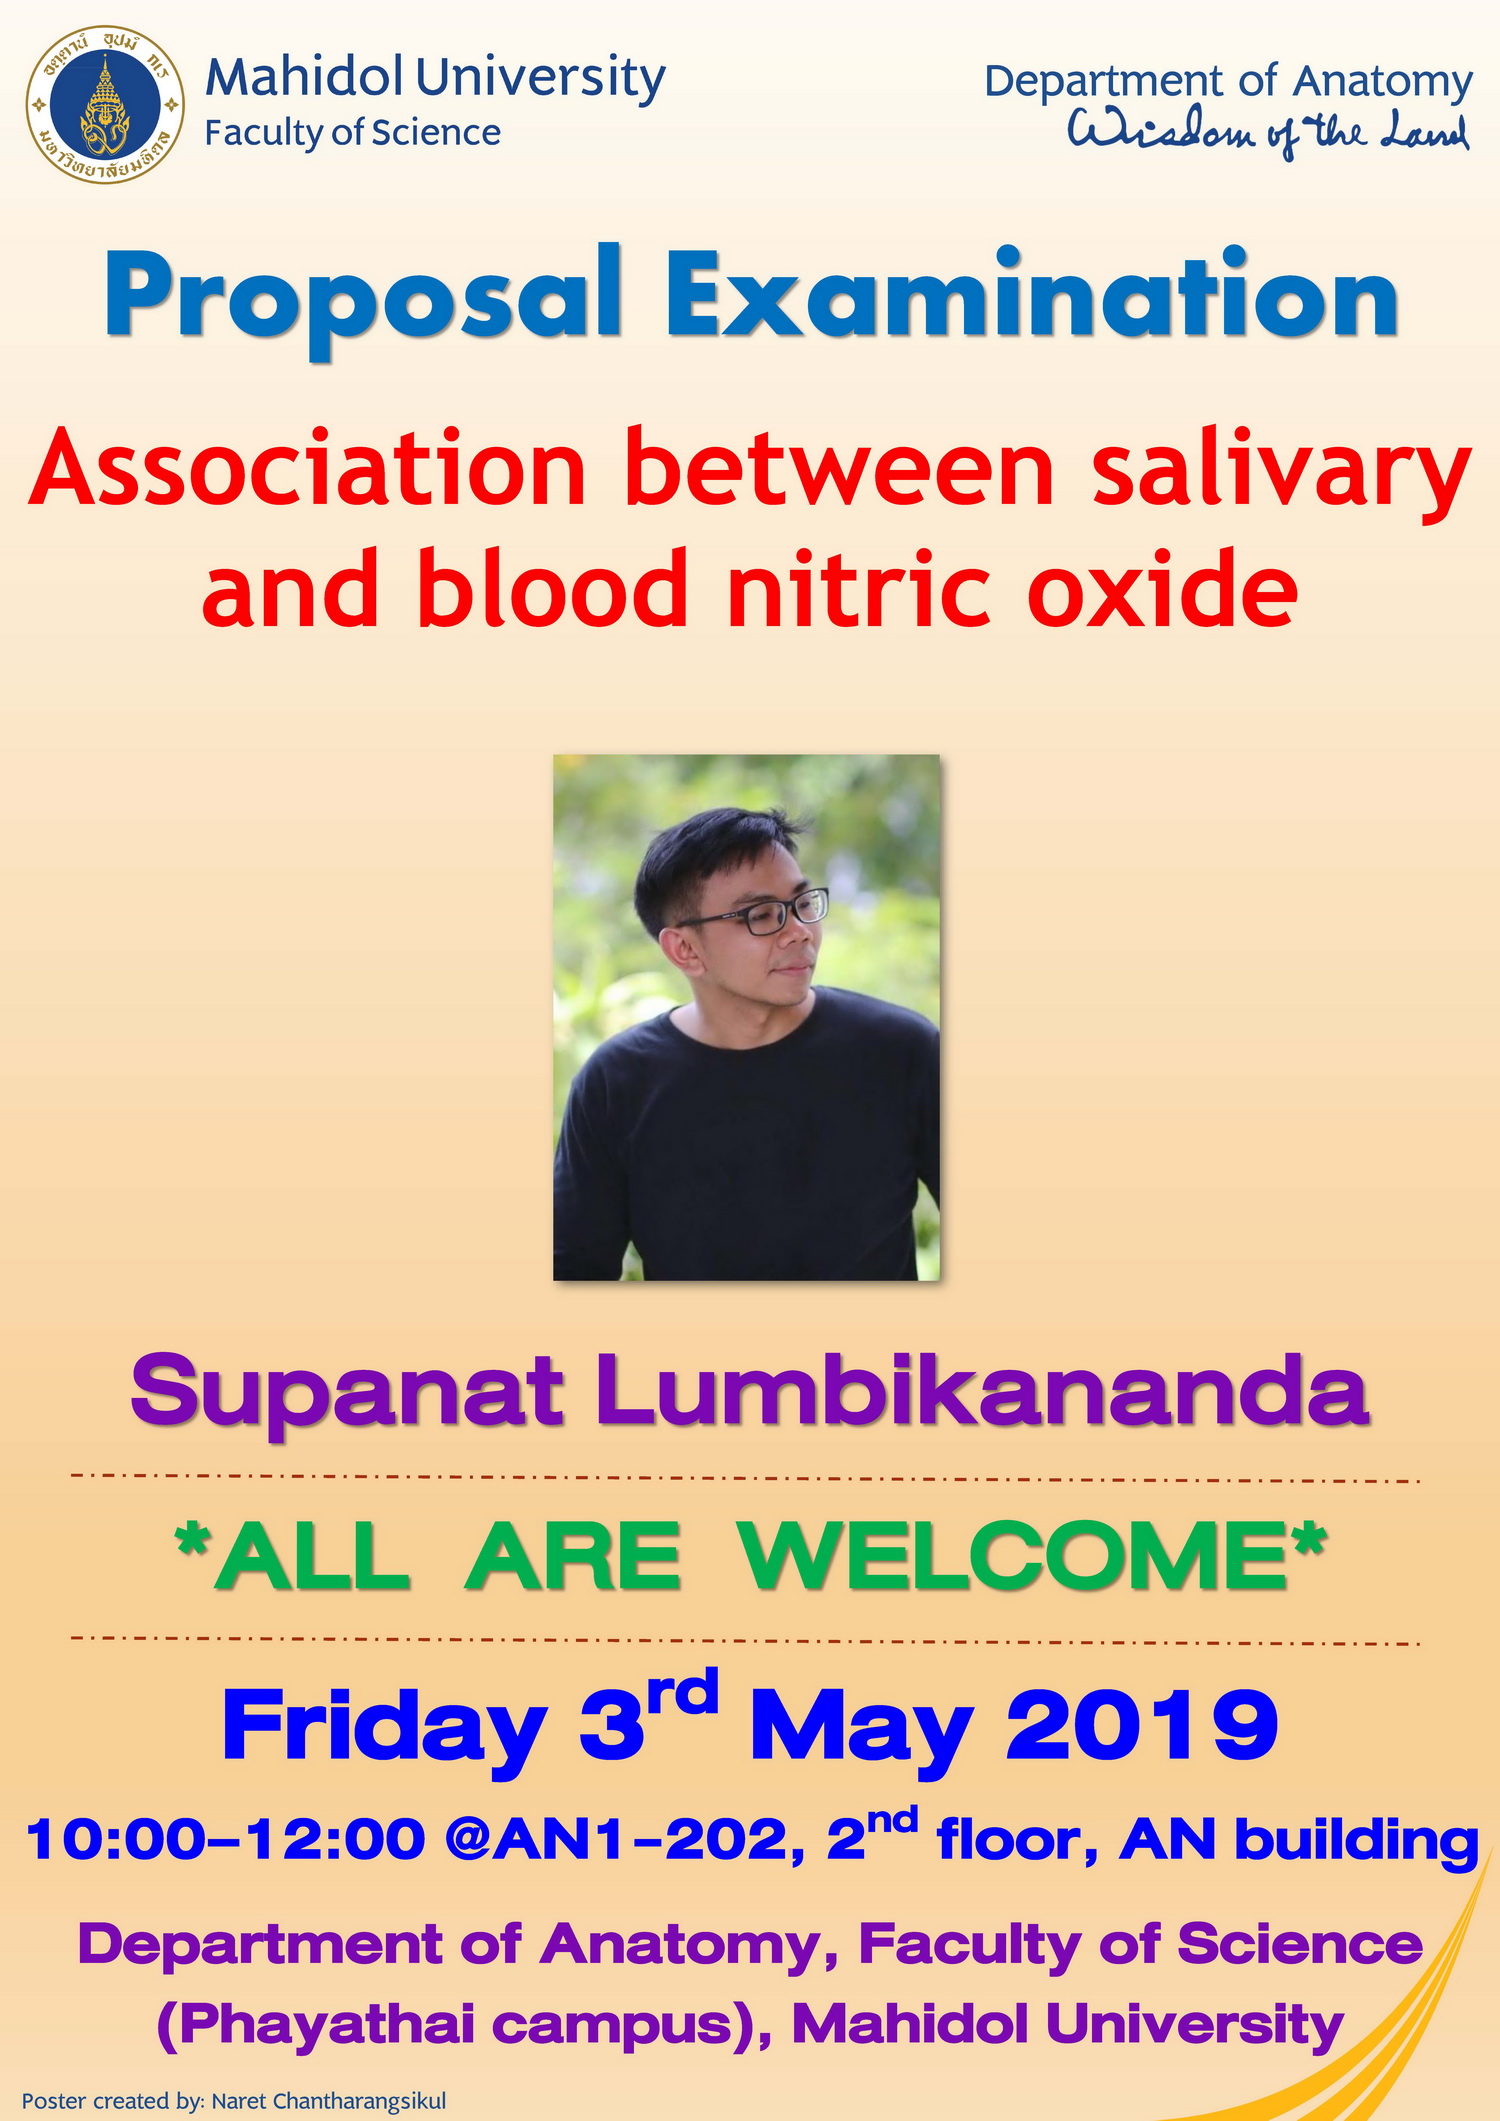 Supanat's Proposal on Friday 1st May 2019, 10:00-12:00, @AN1-202